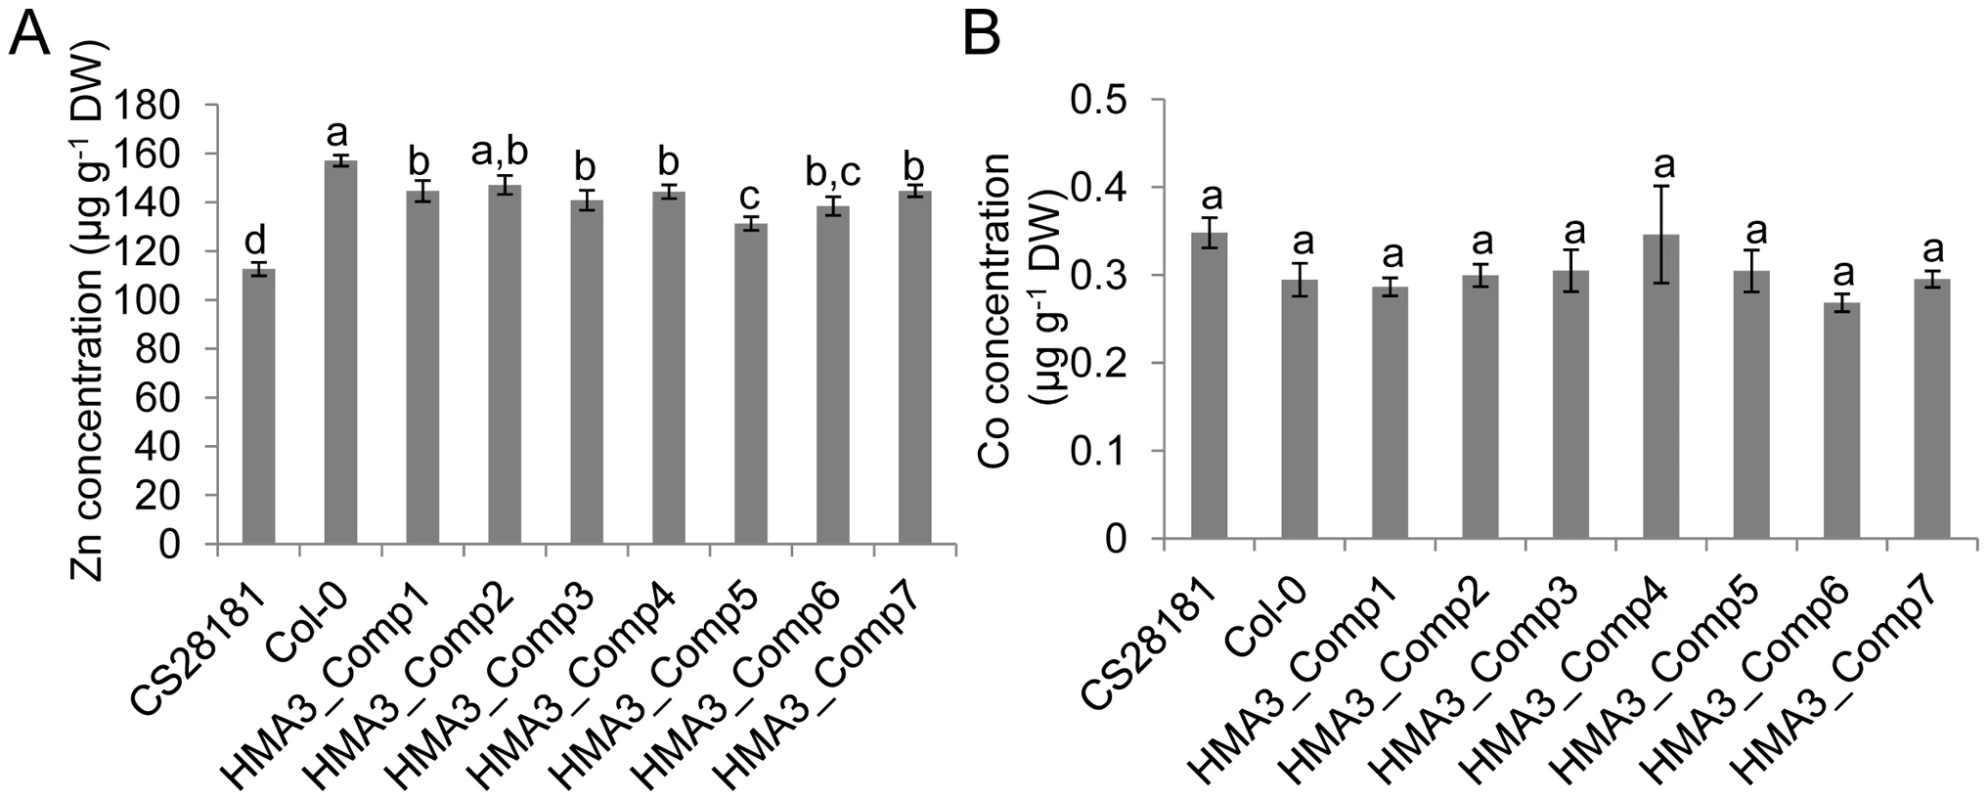 The effect of <i>HMA3</i> function on <i>A. thaliana</i> leaf Zn and Co.